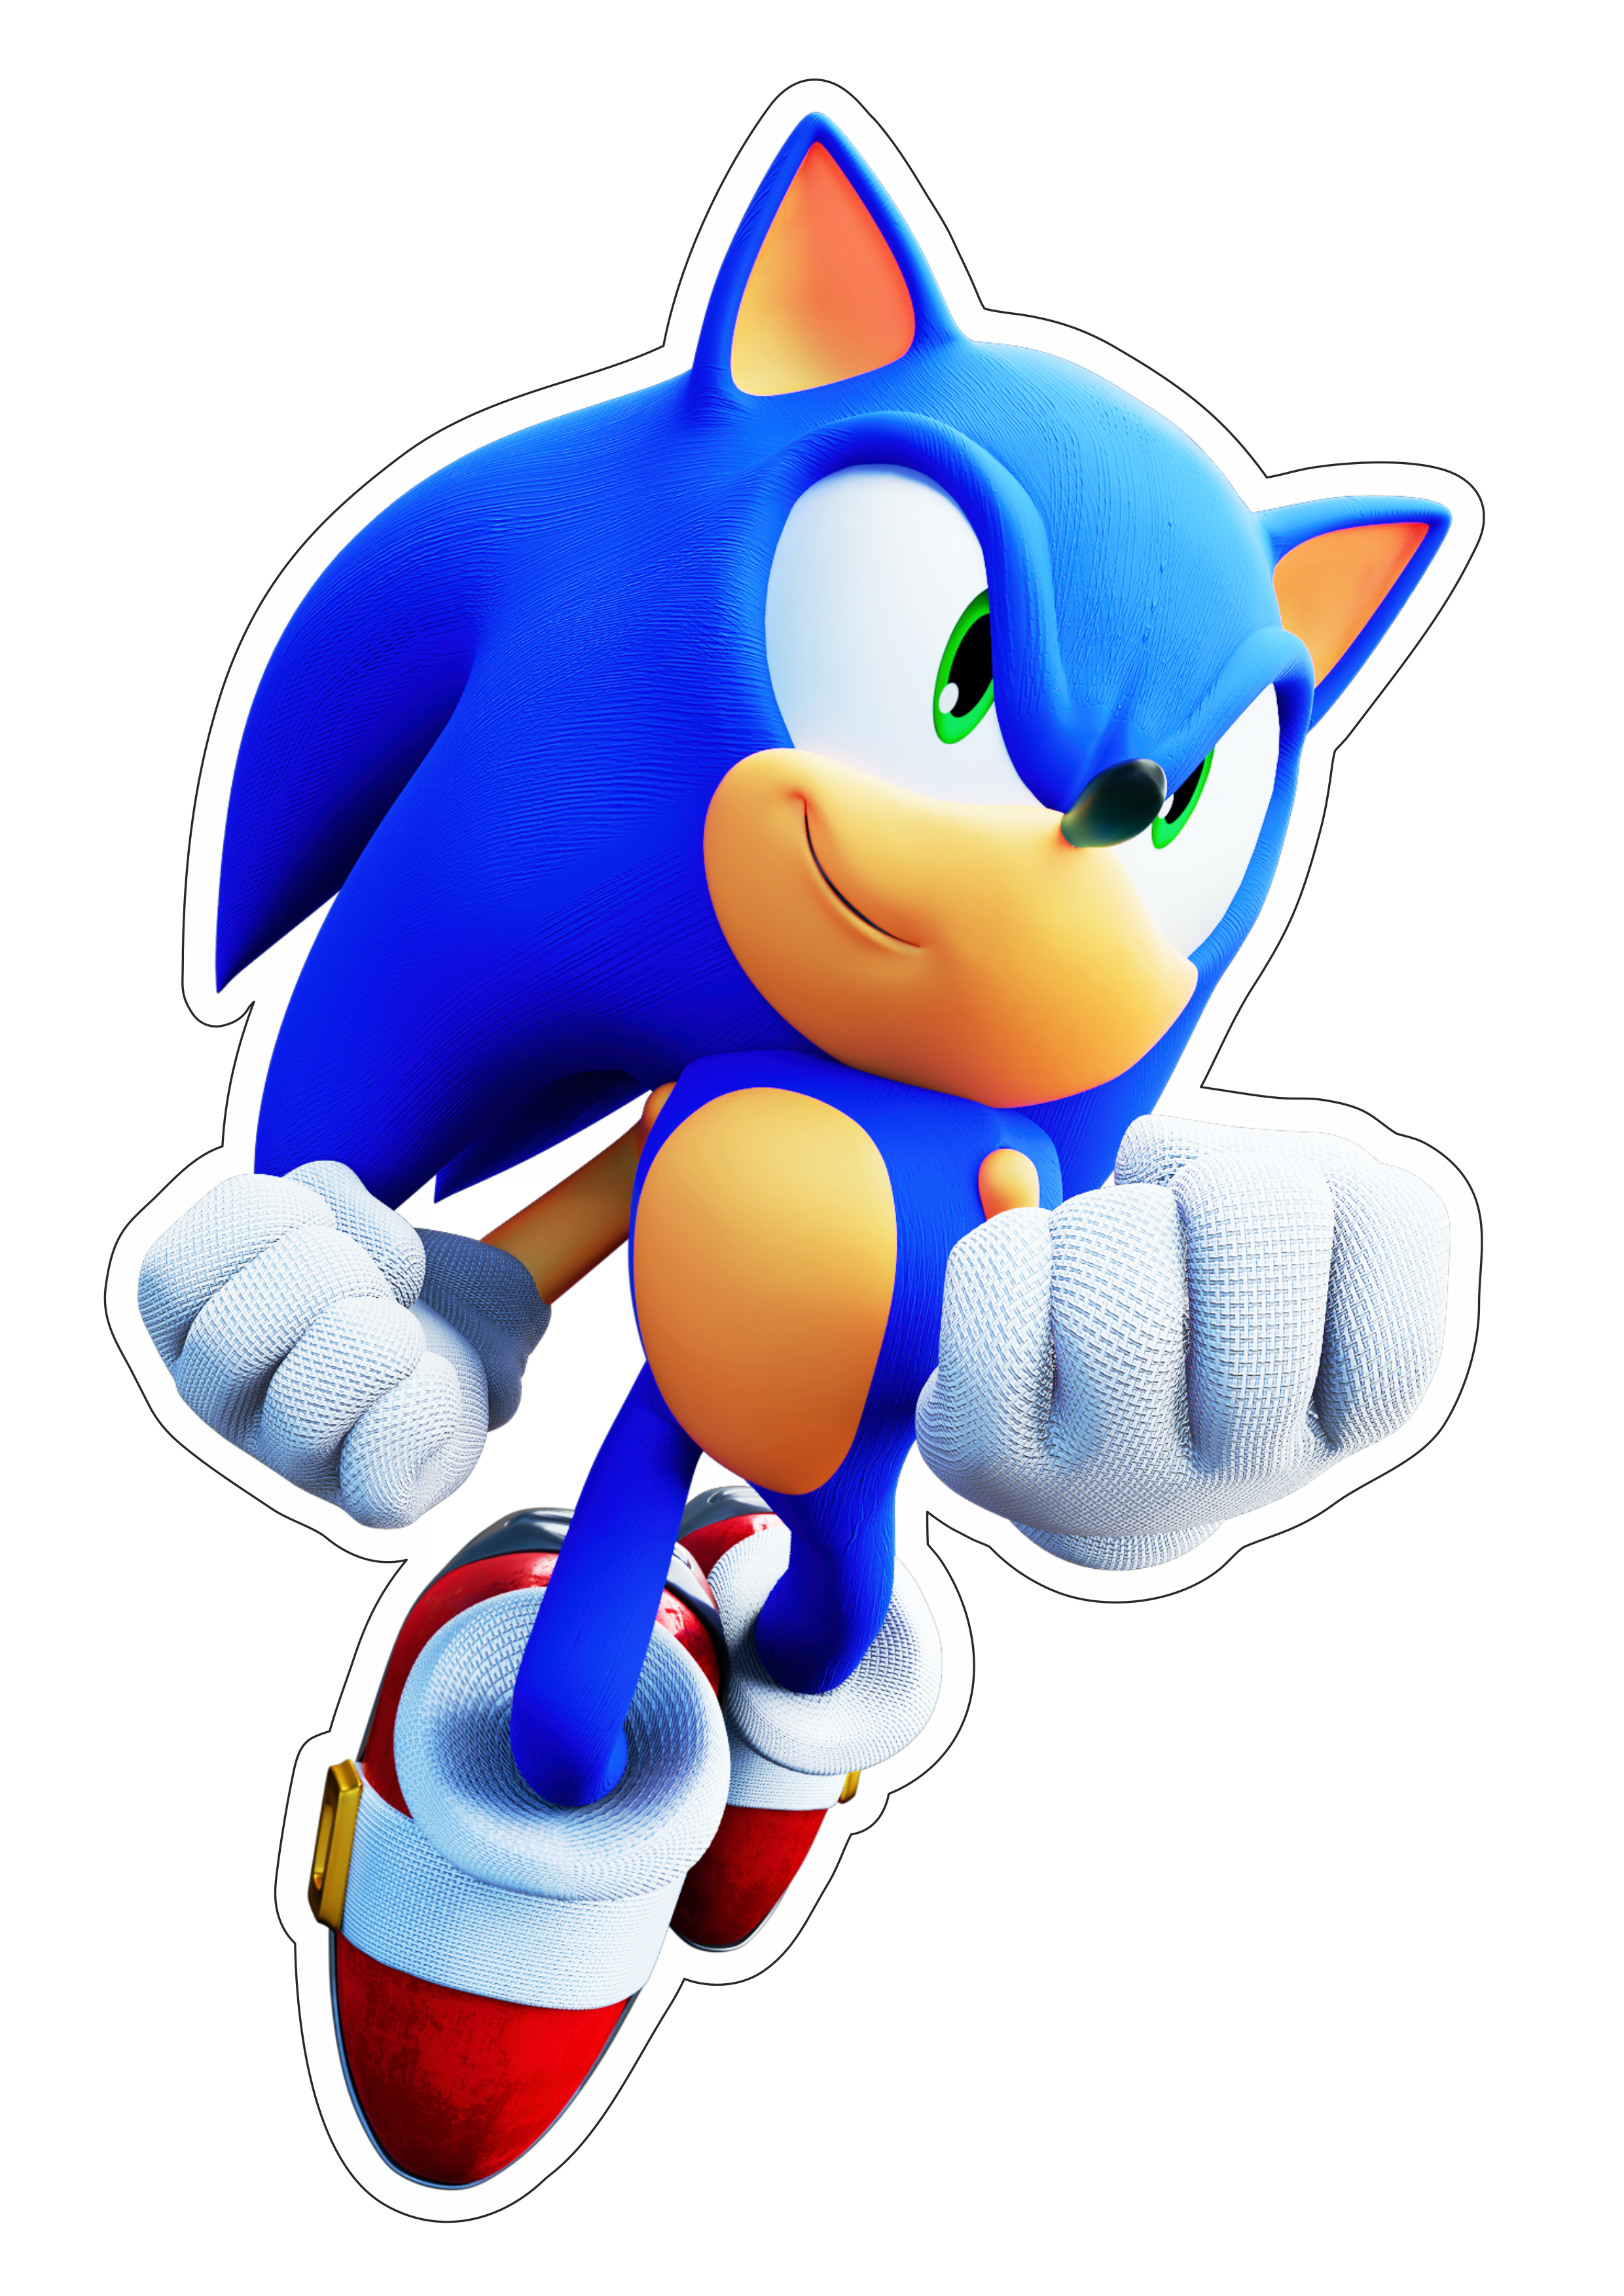 Sonic the hedgehog personagem de game infantil sega imagem sem fundo com contorno artes gráficas artigos de papelaria png